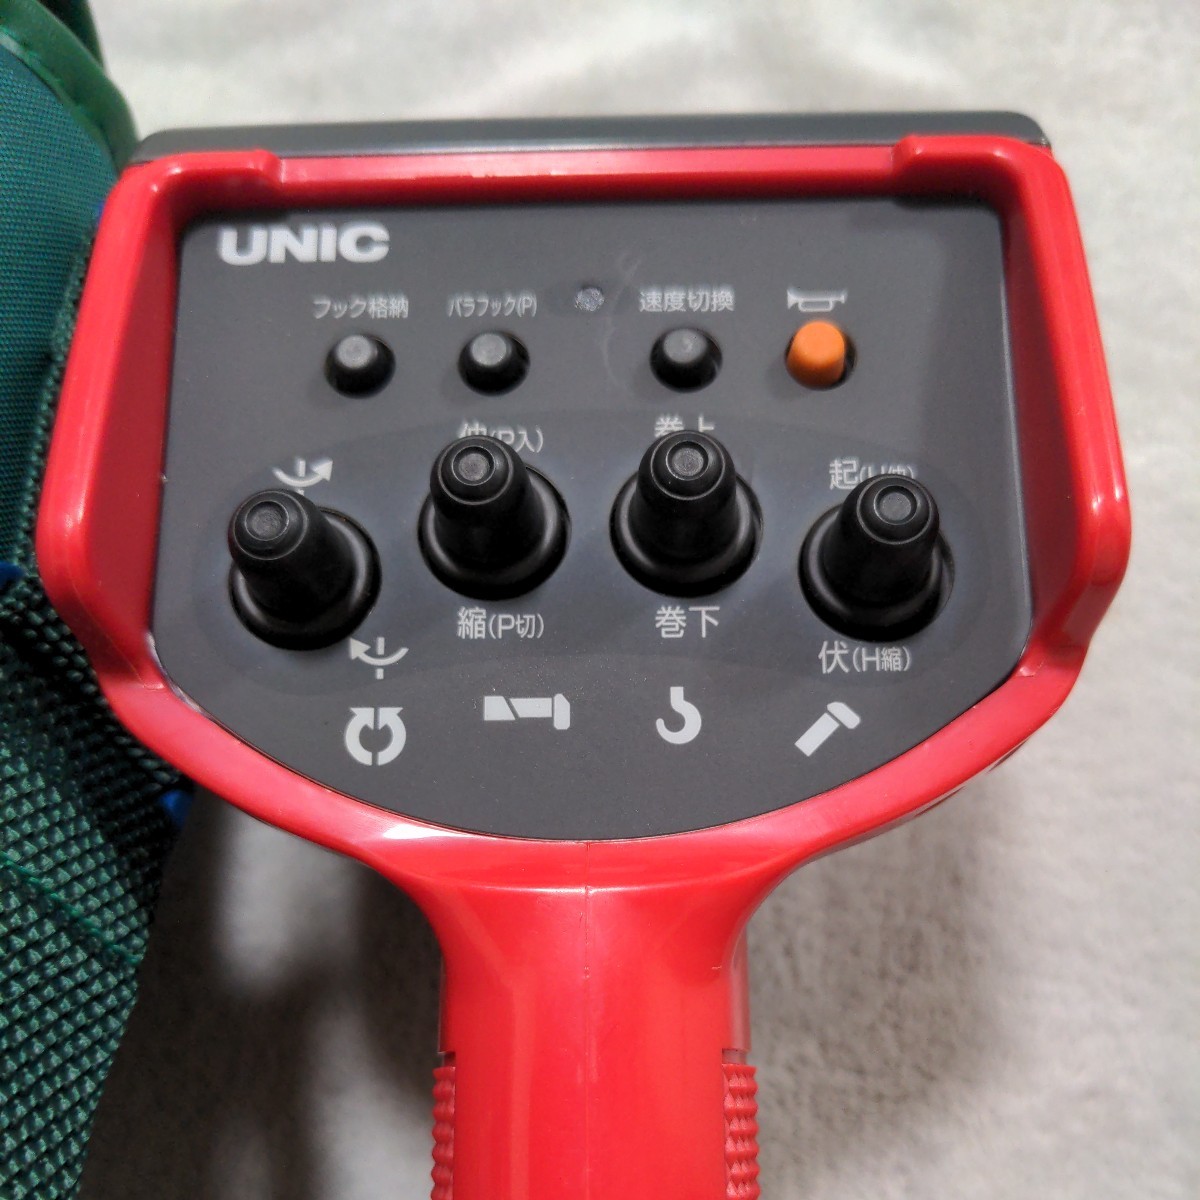  new goods unused Unic RC-500F crane remote control radio-controller 